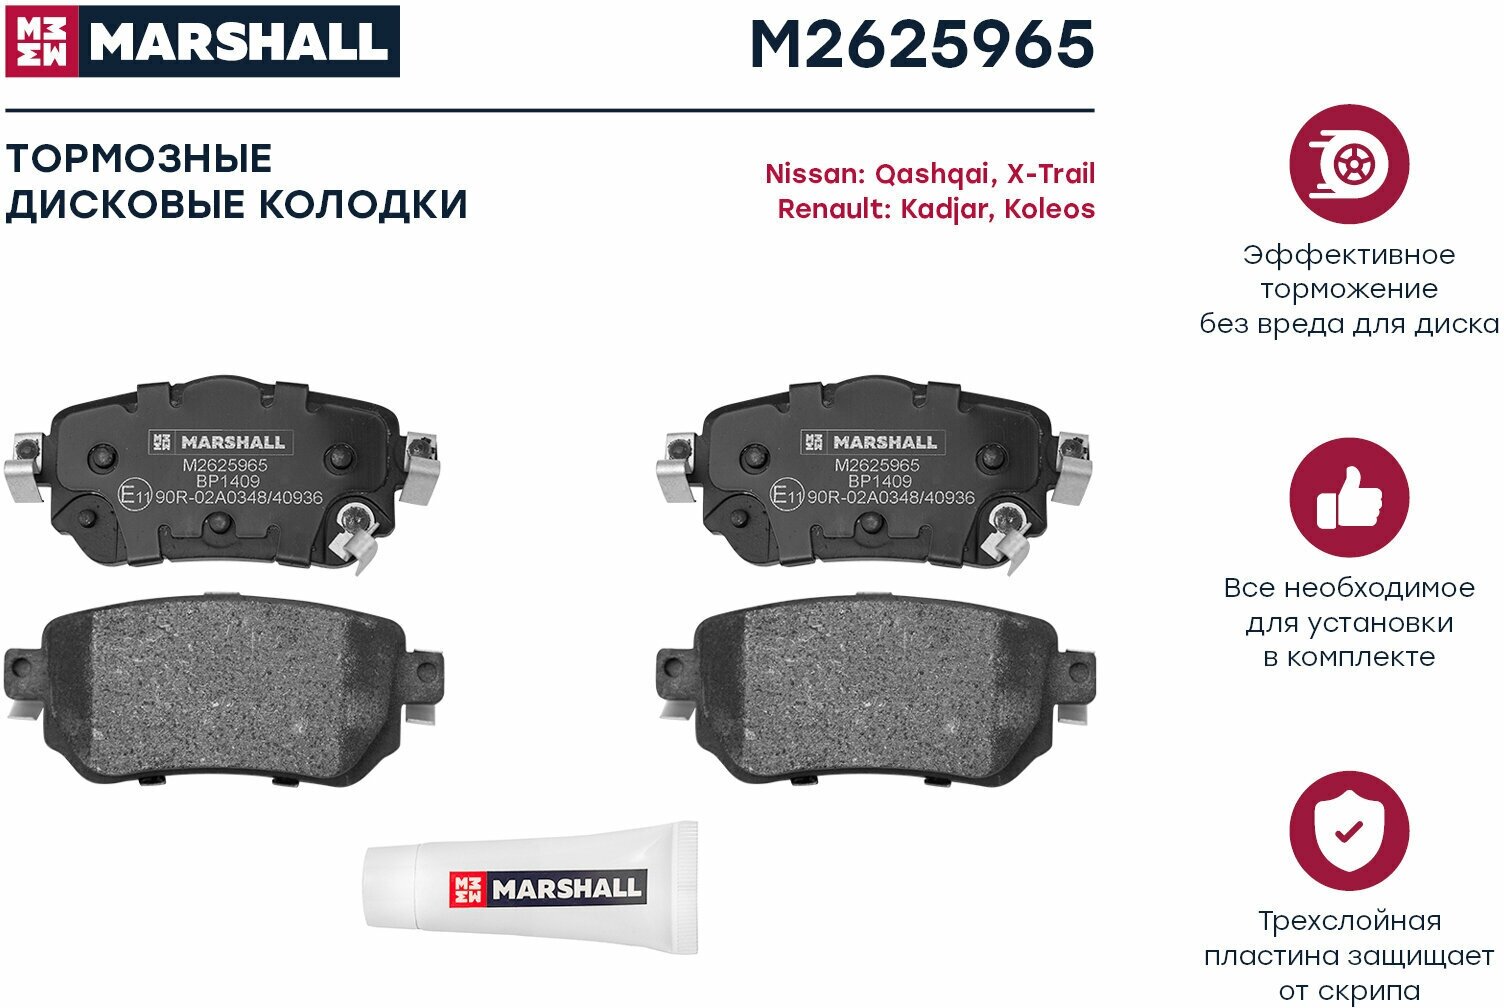 Колодки тормозные дисковые задние Marshall M2625965 для а/м Nissan Quashqai J11 13-, X-Trail T31 13-